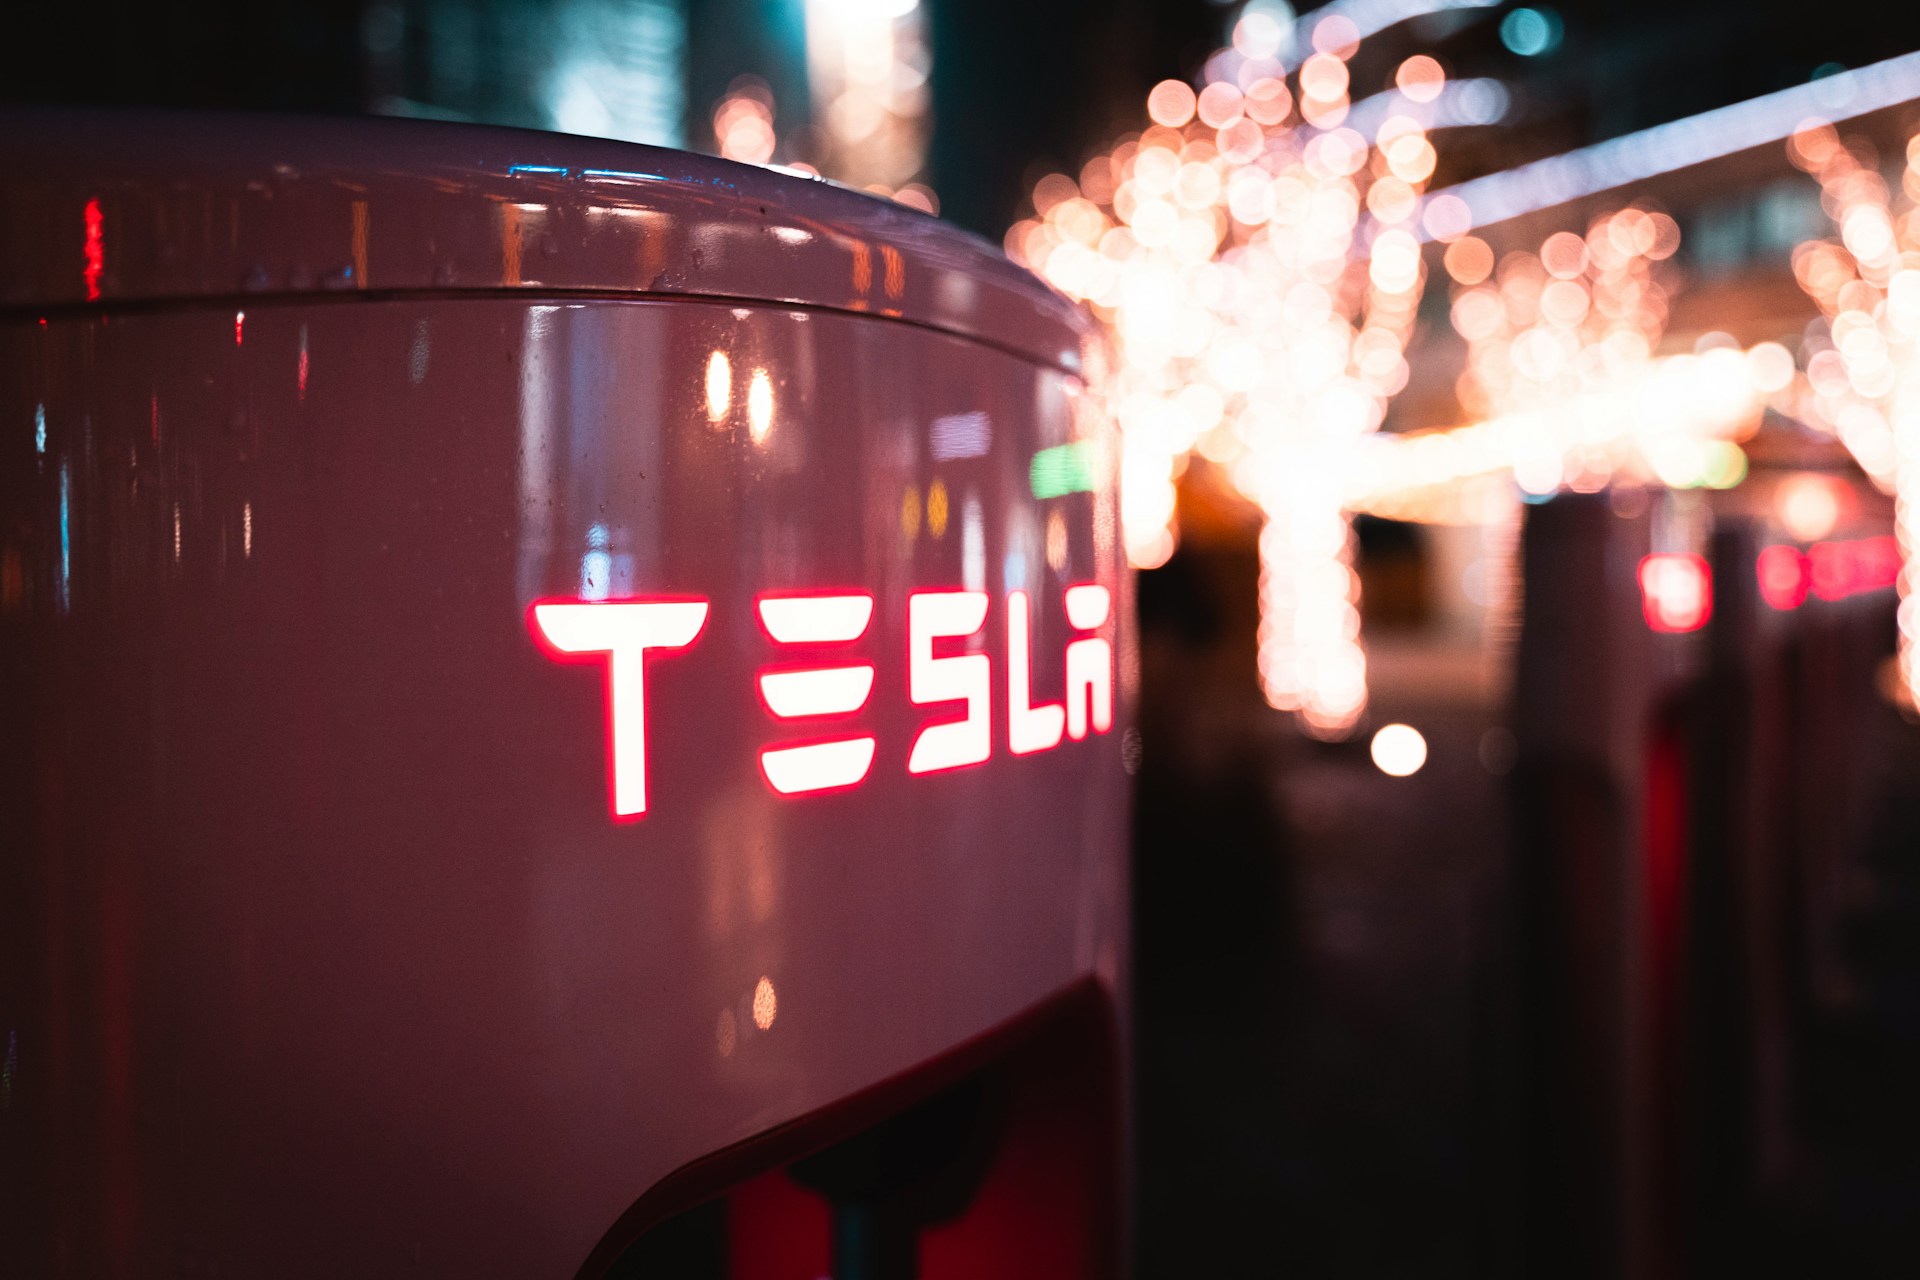 Tesla залучає Apple до судового розгляду щодо смертельної ДТП з автопілотом